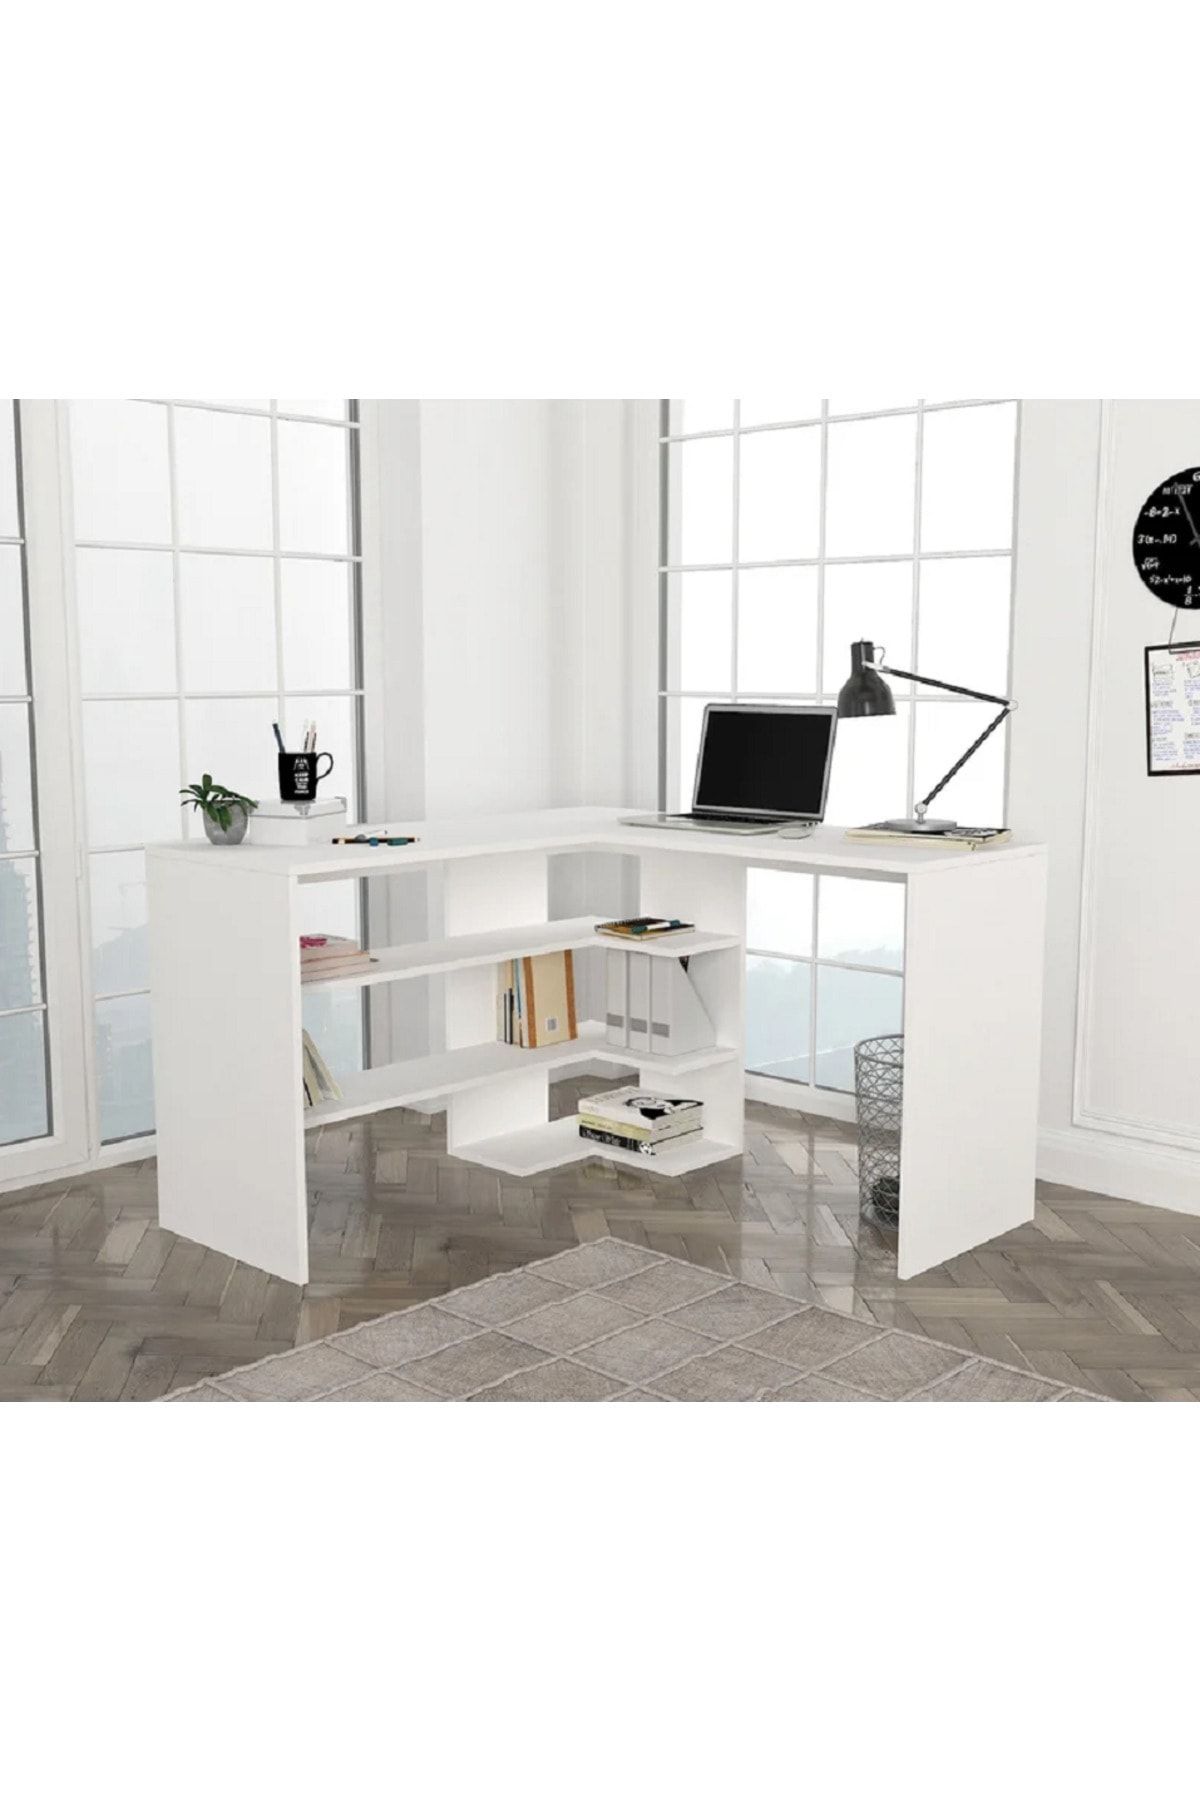 aden home senin evin senin dünyan Kitaplıklı Çalışma Masası, Beyaz Çalışma Masası, Ders Çalışma Masası, L Ofis Masası, 120x120 - CM63